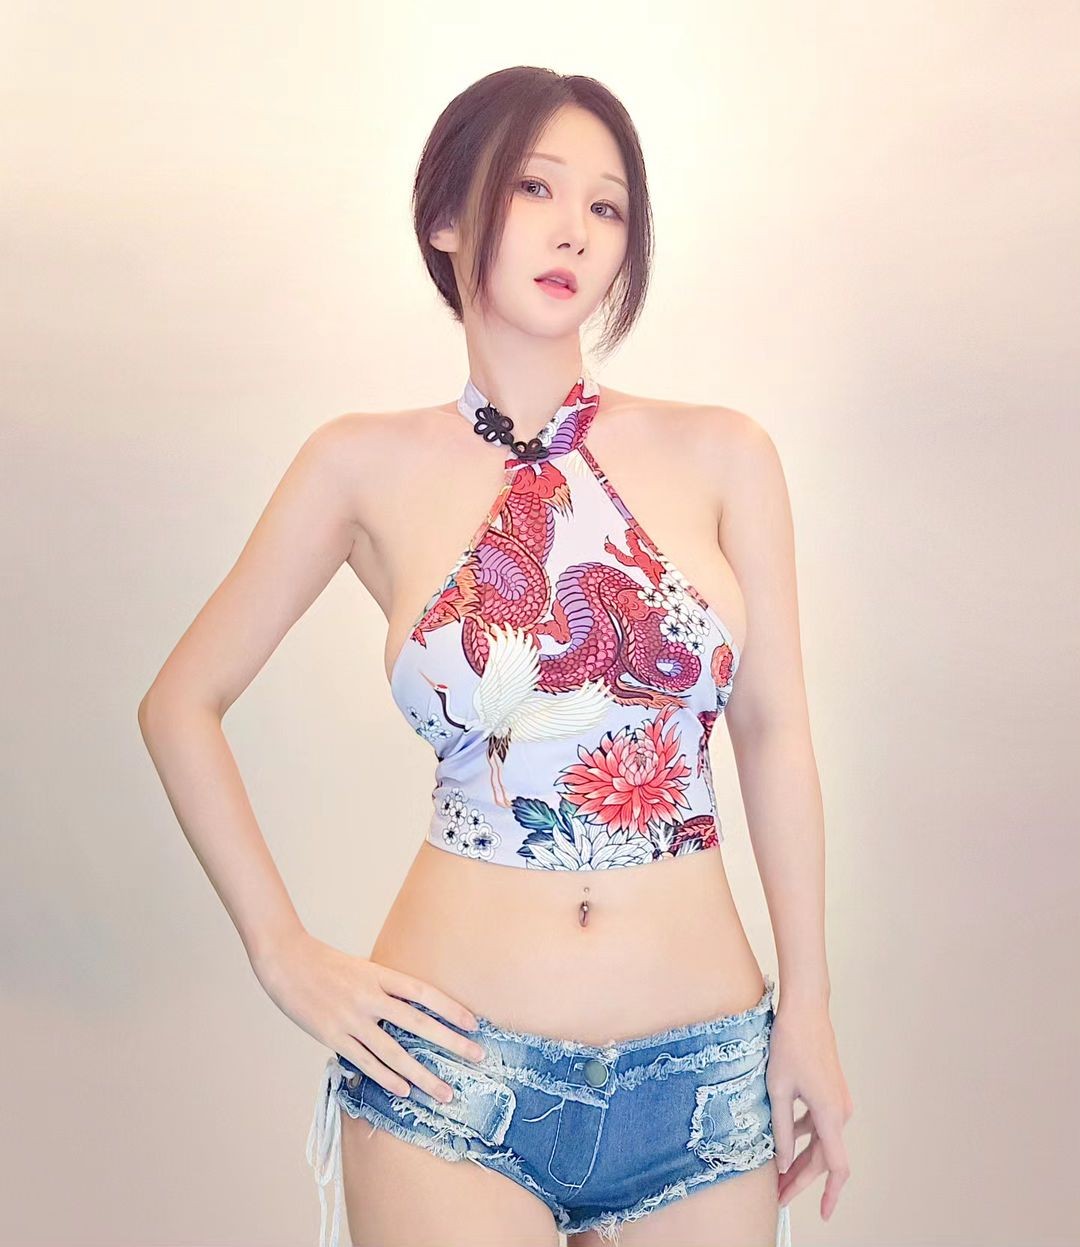 韩国美女模特MyBoo福利图赏 极致身材十分热辣